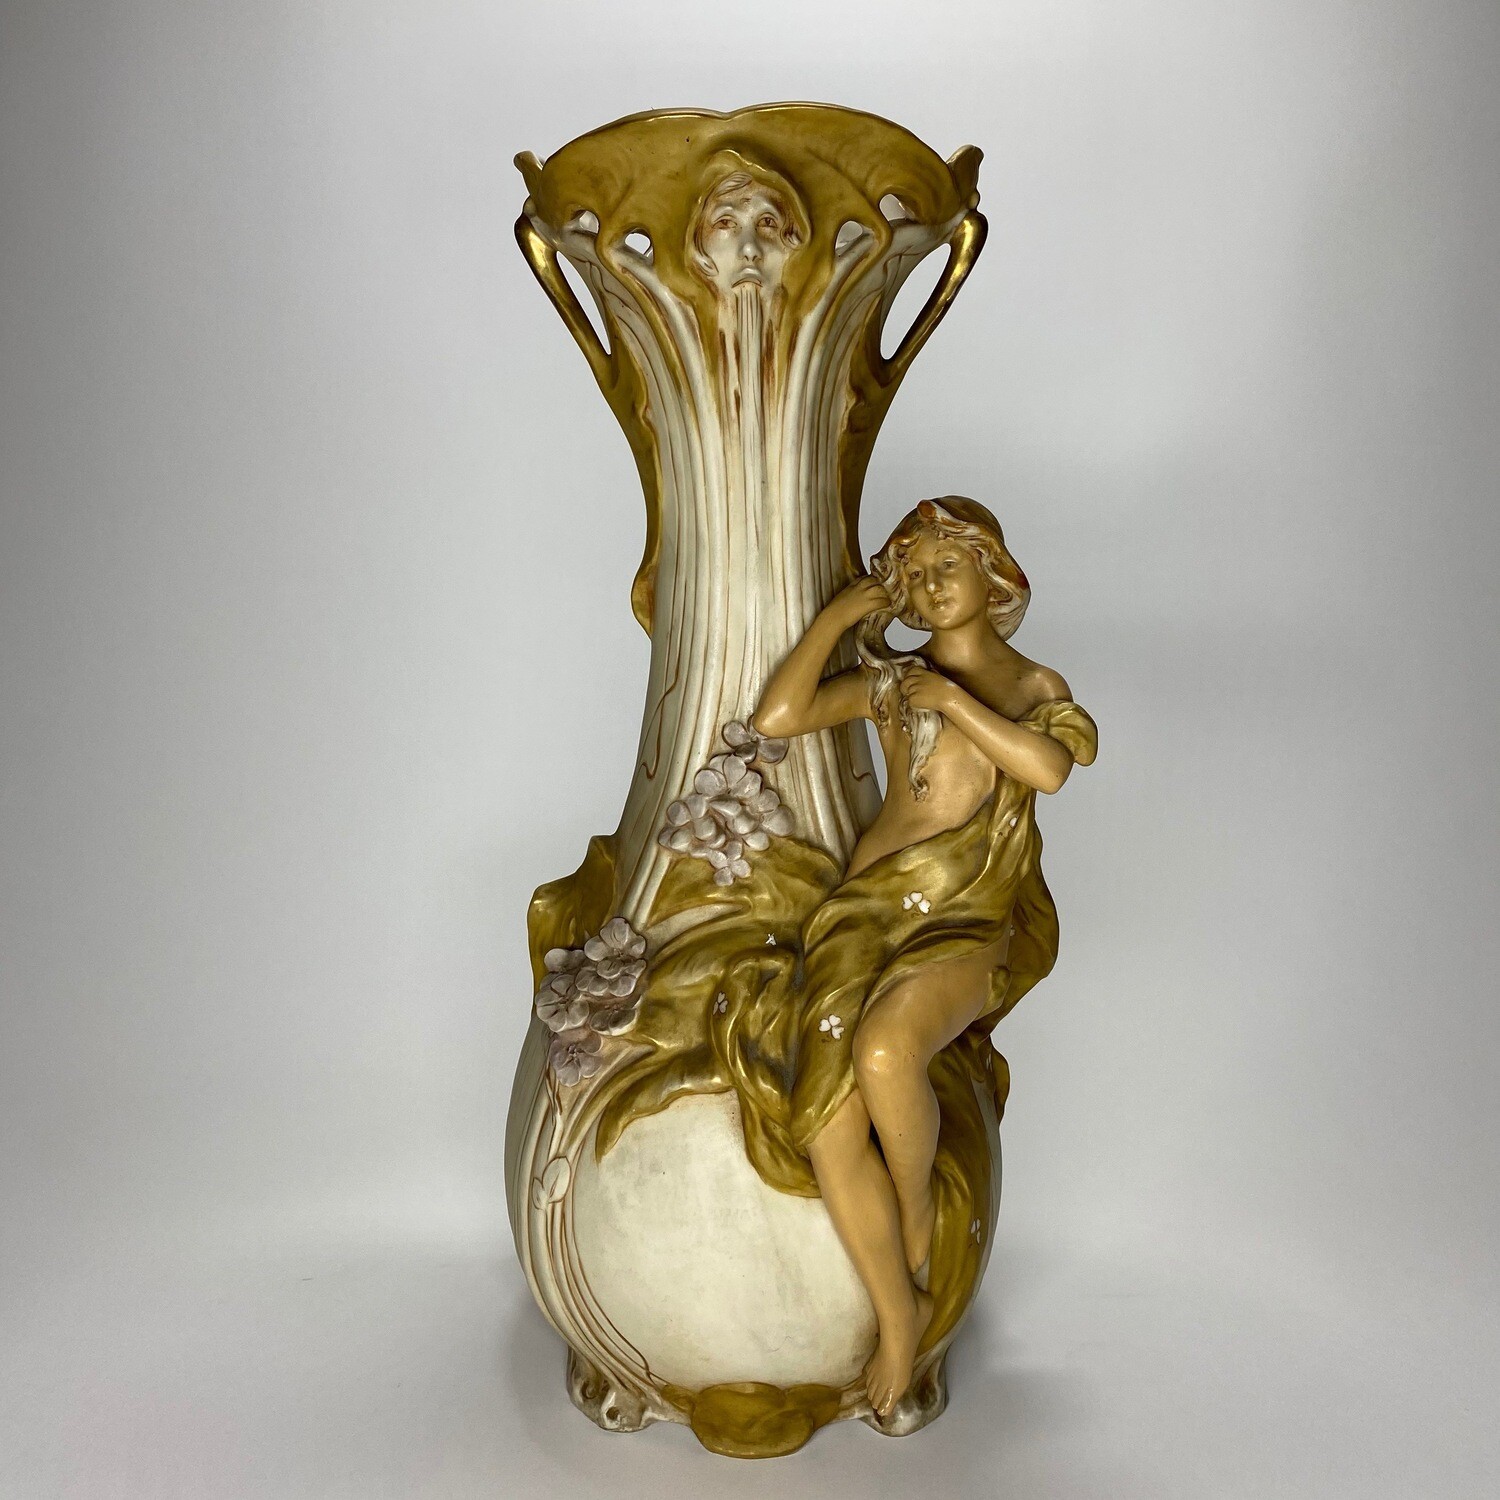 Bohemian Art Nouveau Ceramic Figural Amphora Vase Made by Royal Dux